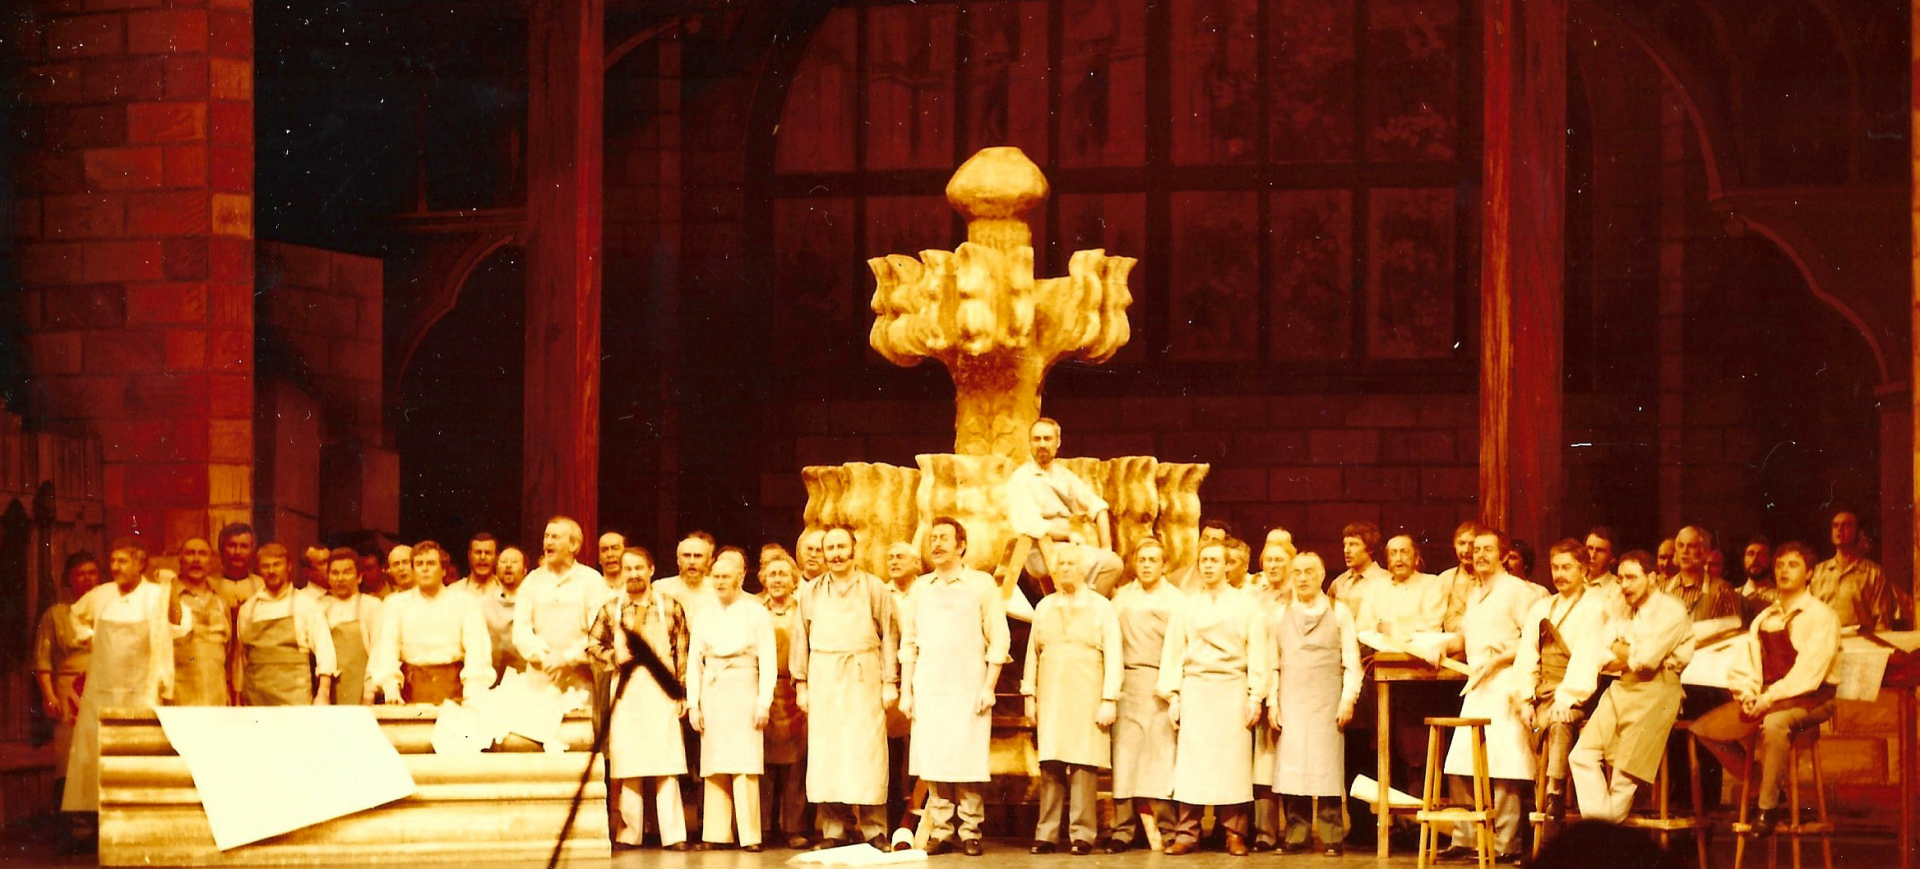 Kölle, ming Kölle - Divertissementchen 1980 - Großer Chor in Szene